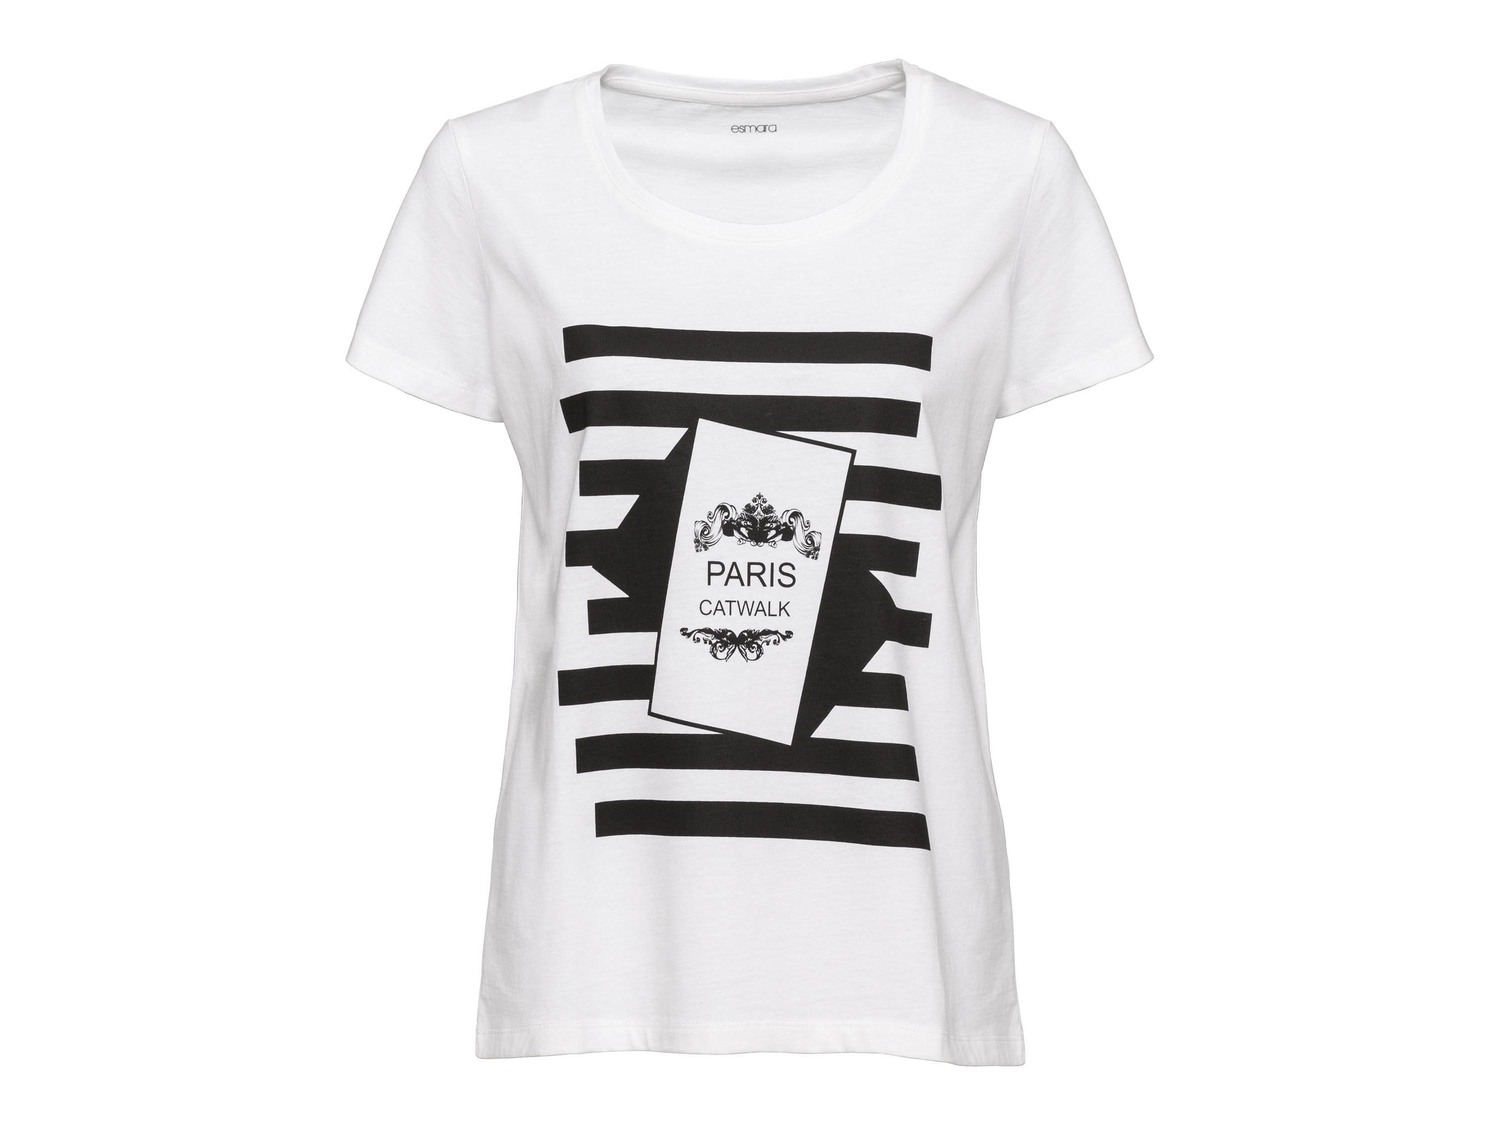 T-shirt da donna Esmara, prezzo 4.99 &#8364;  
-  In puro cotone
- Oeko tex NEW